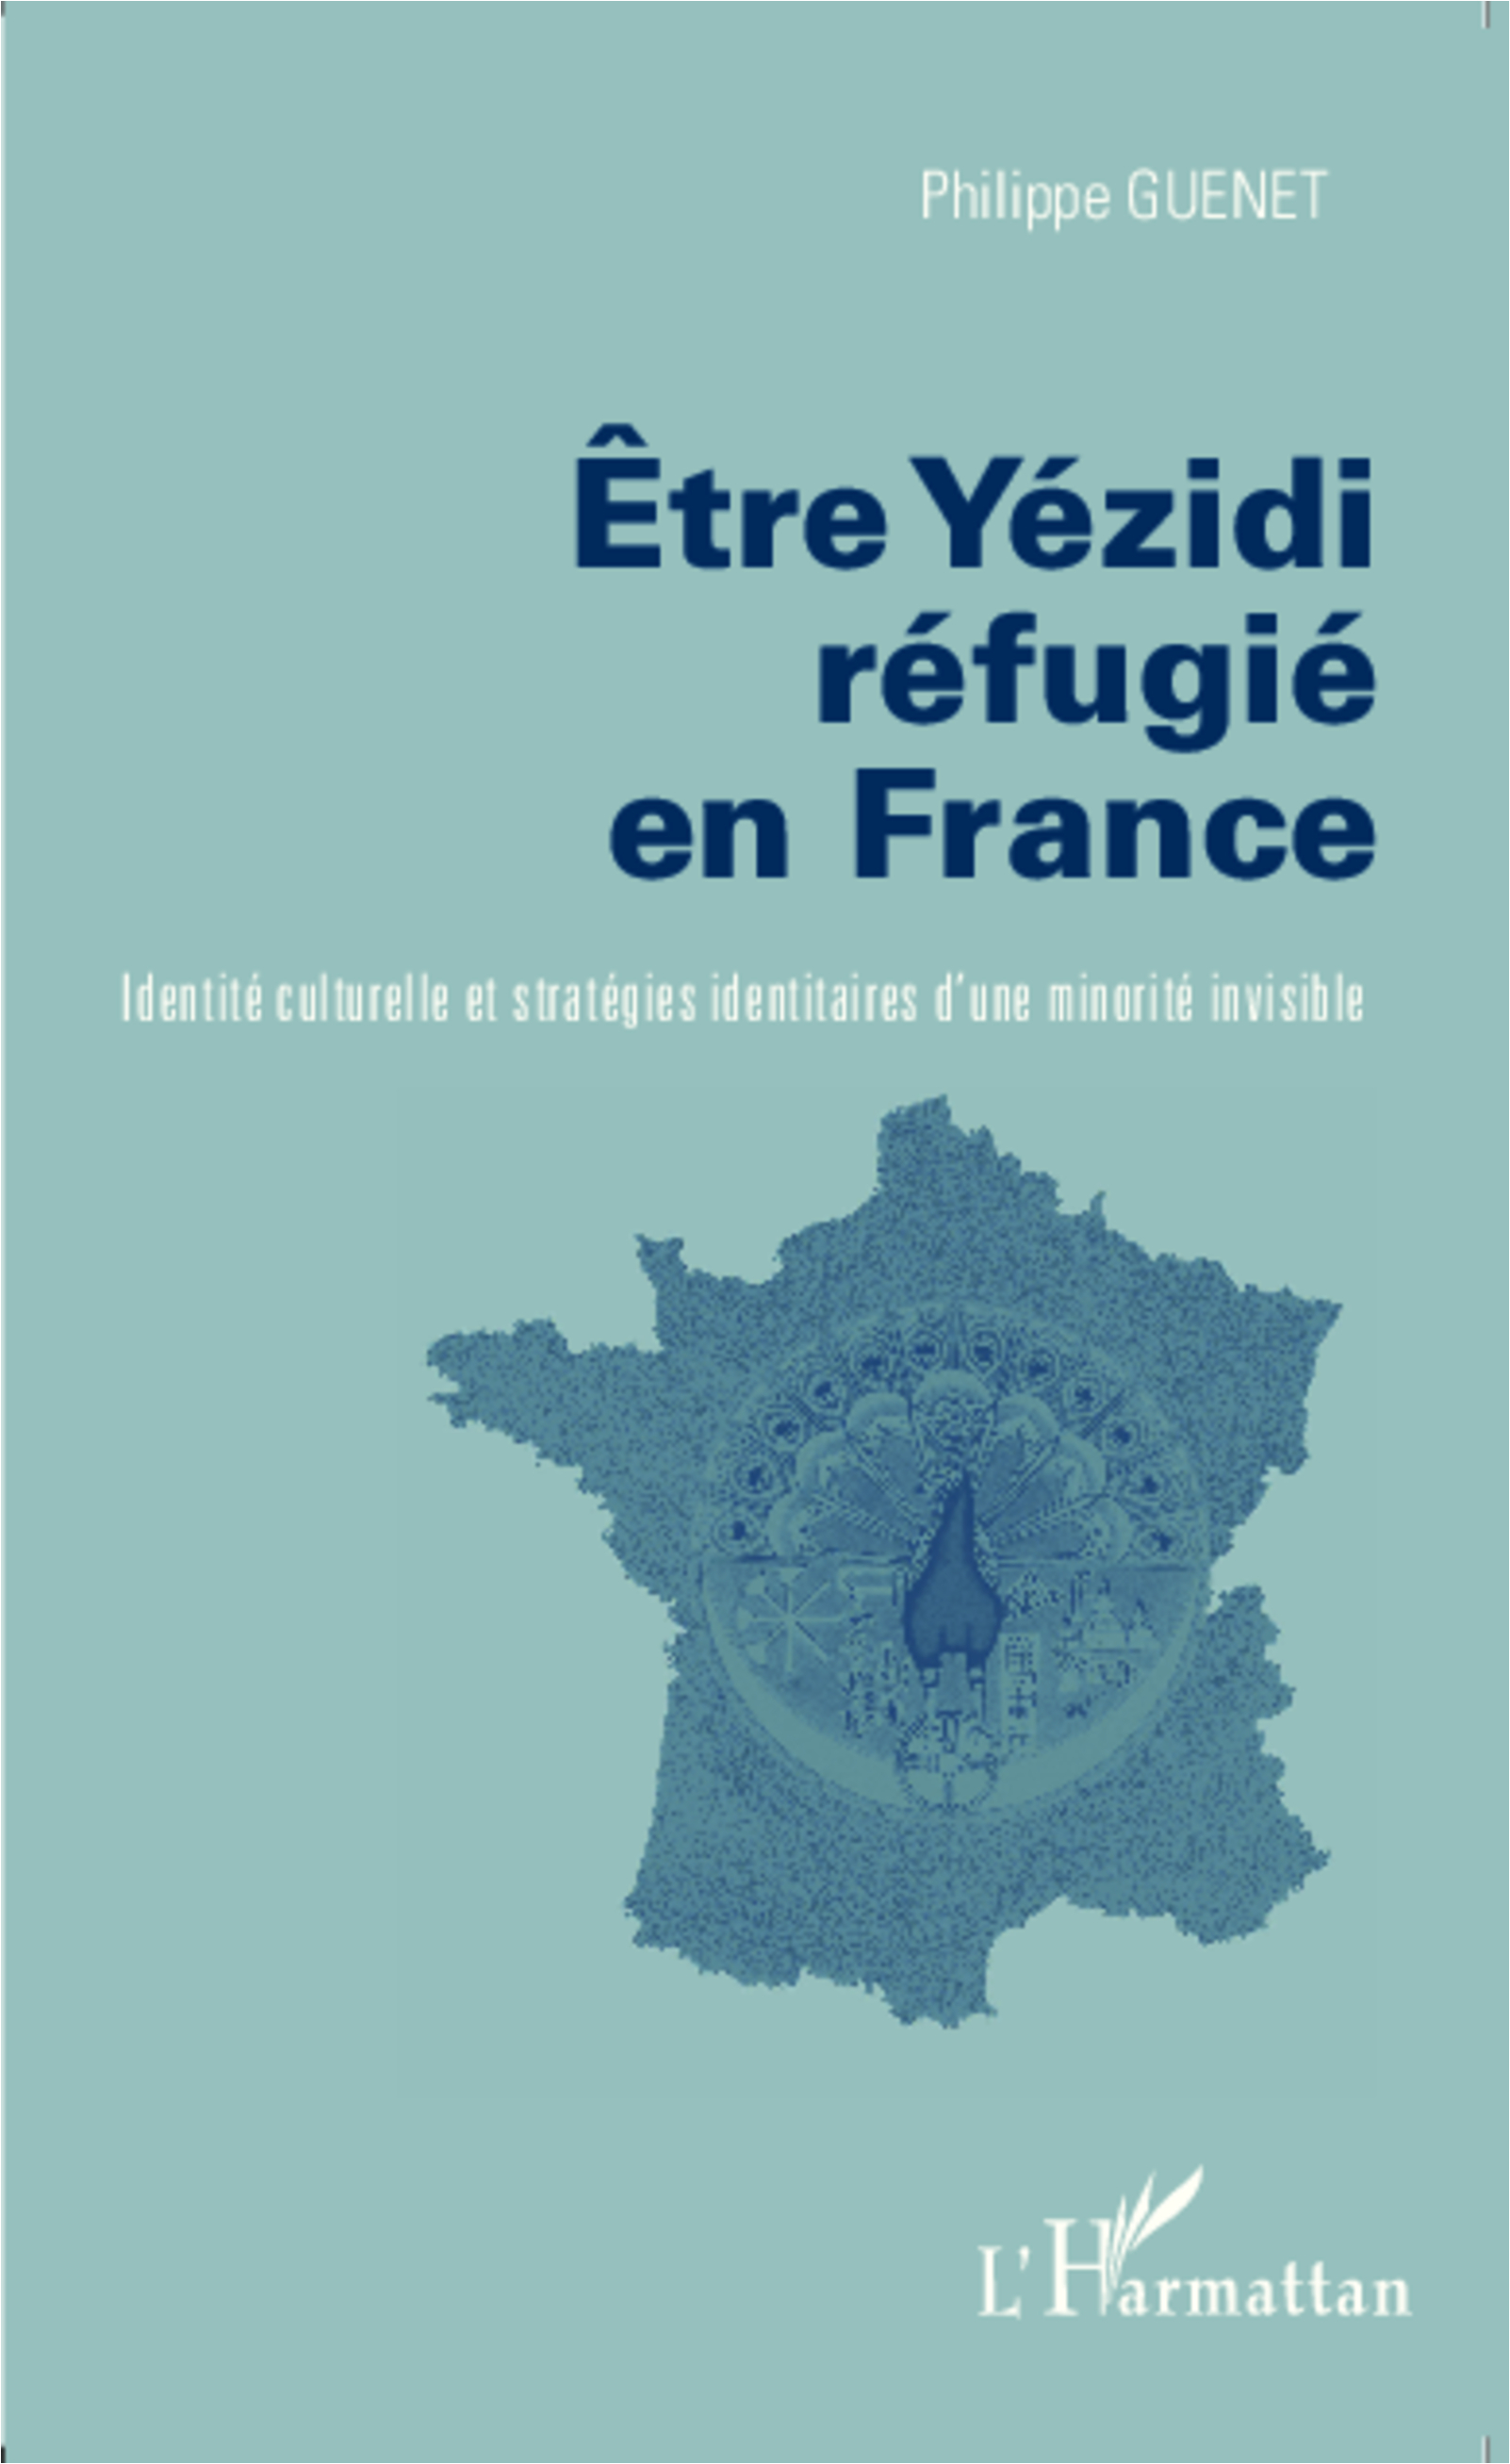 Etre Yezidi réfugié en France, Identité culturelle et stratégies identitaires d'une minorité invisible (9782343044637-front-cover)